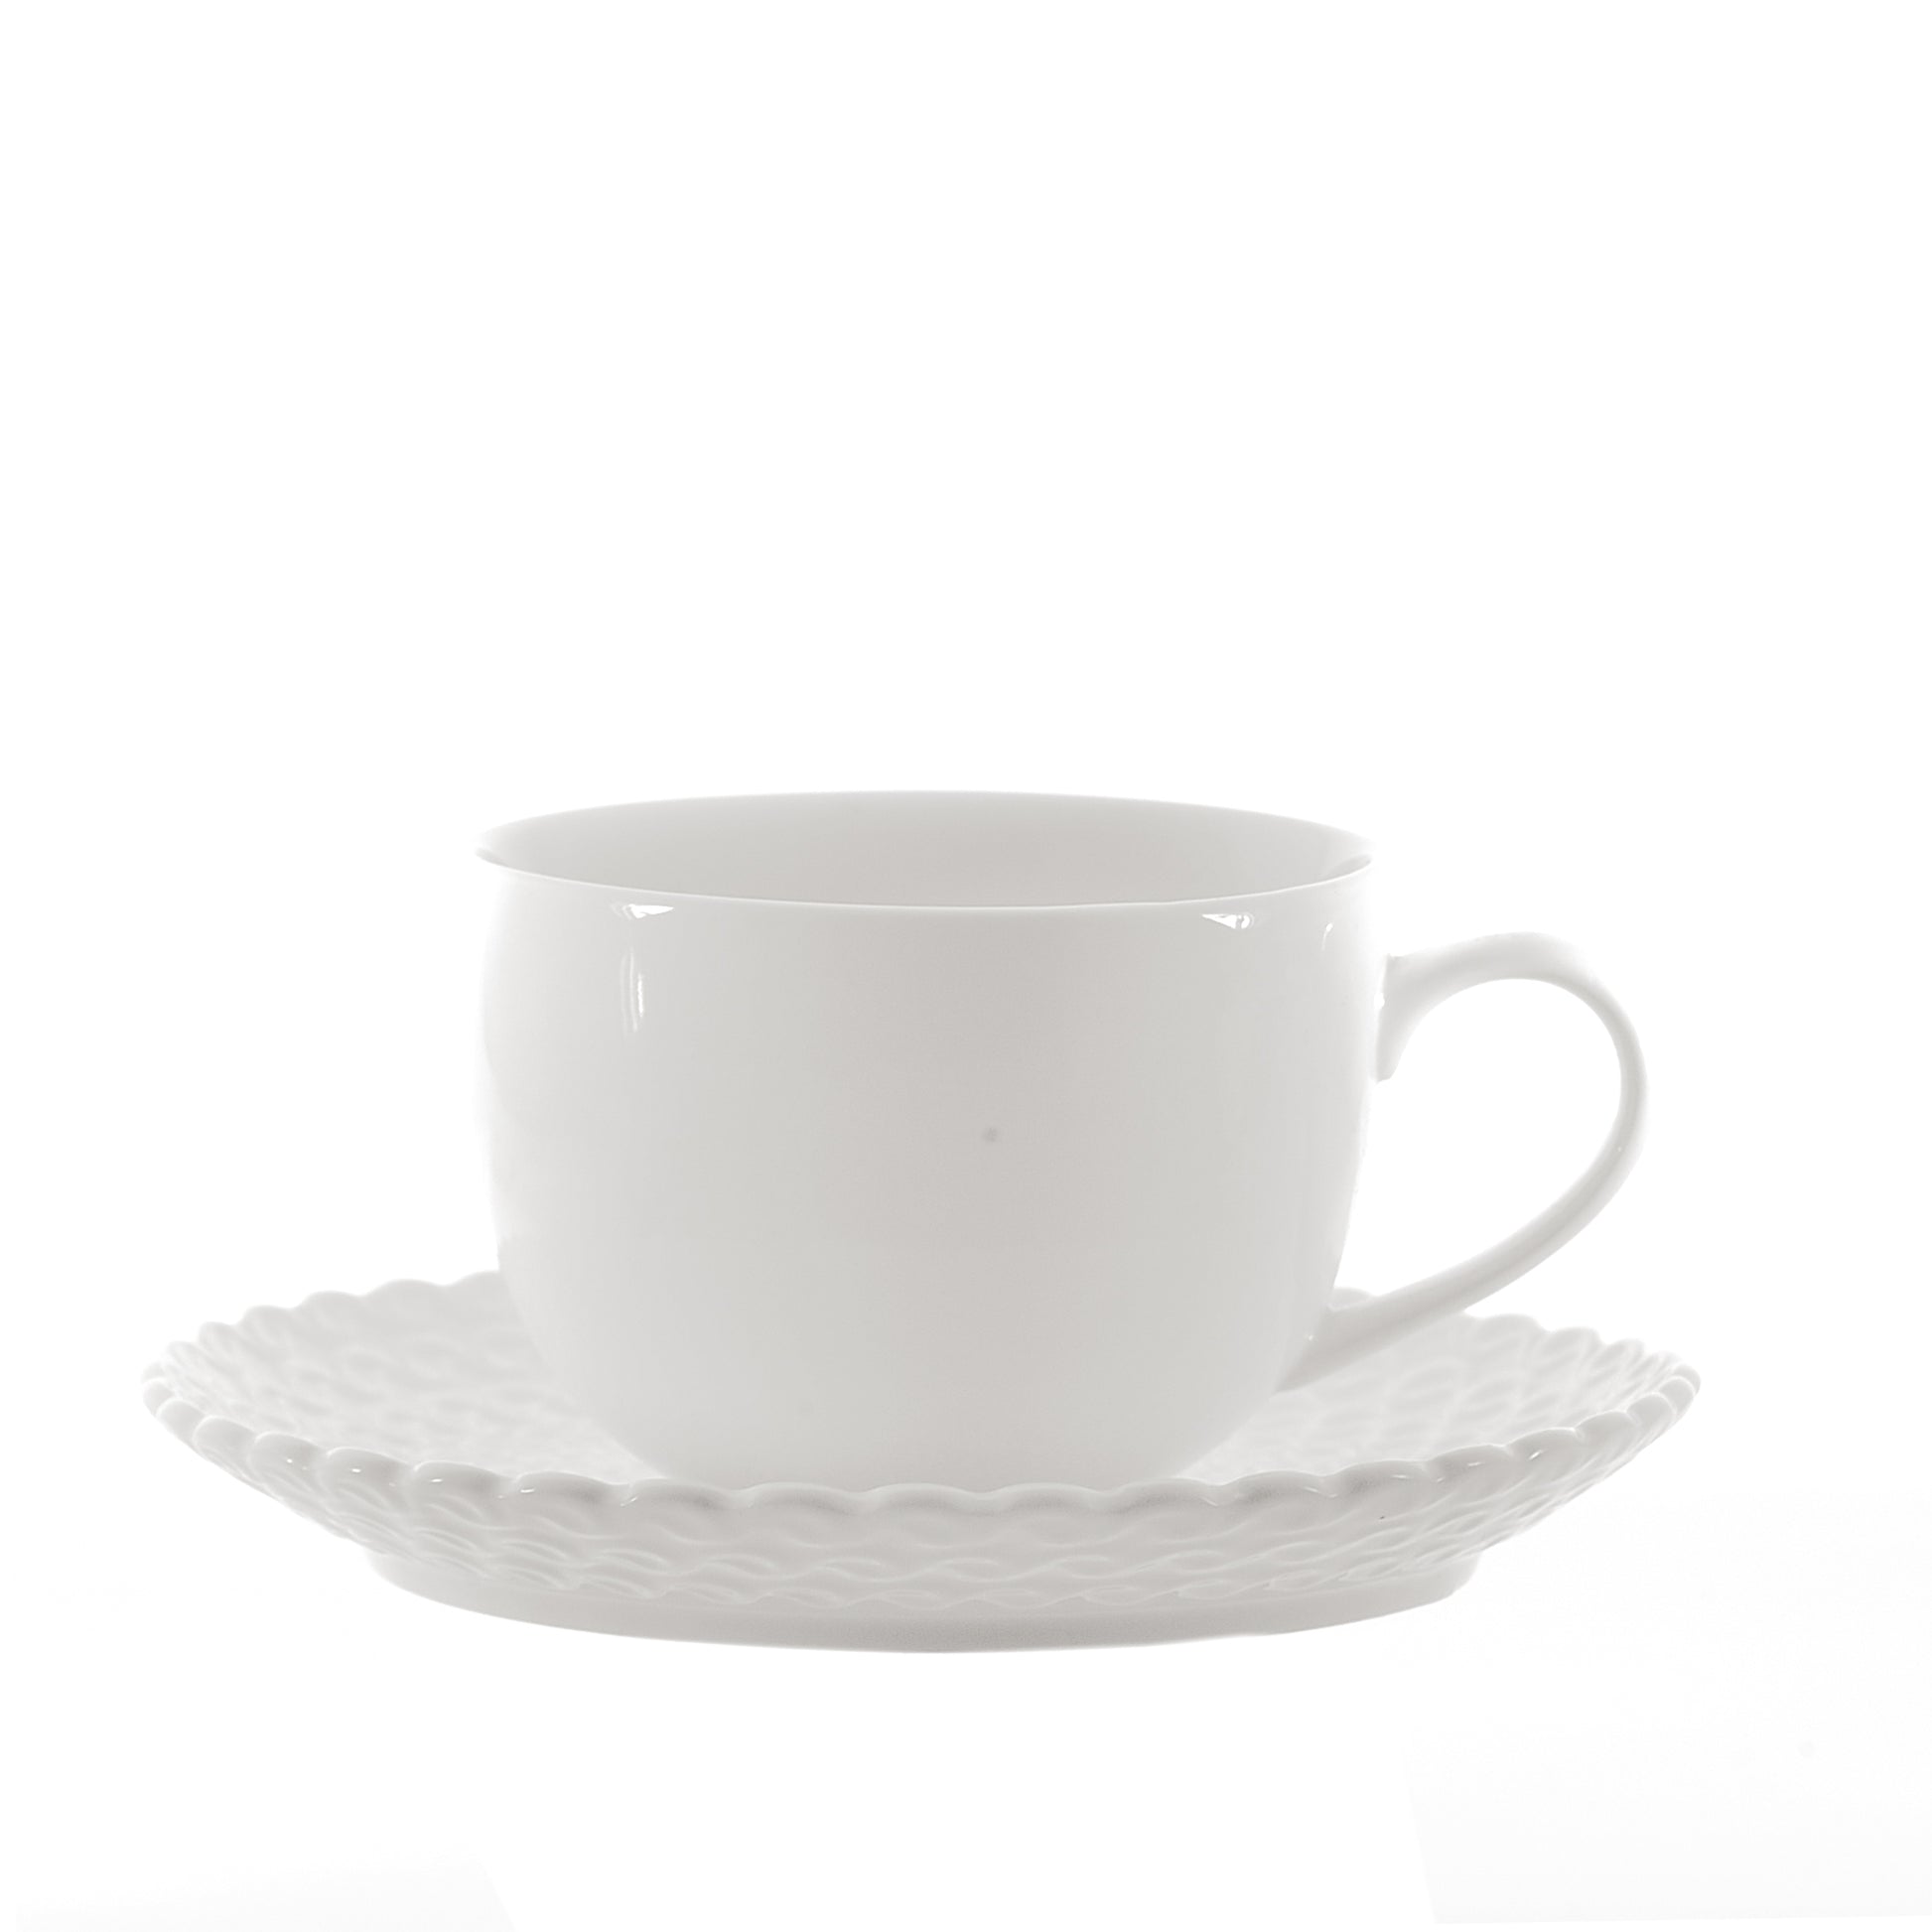 Set di 6 tazze tè con piattino in porcellana bianca. Bordi smerlati su piatti, vassoi, piattini, bowl della linea Momenti, per dare un tocco di eleganza ad ogni apparecchiatura. In negozio e online su tuttochic.it